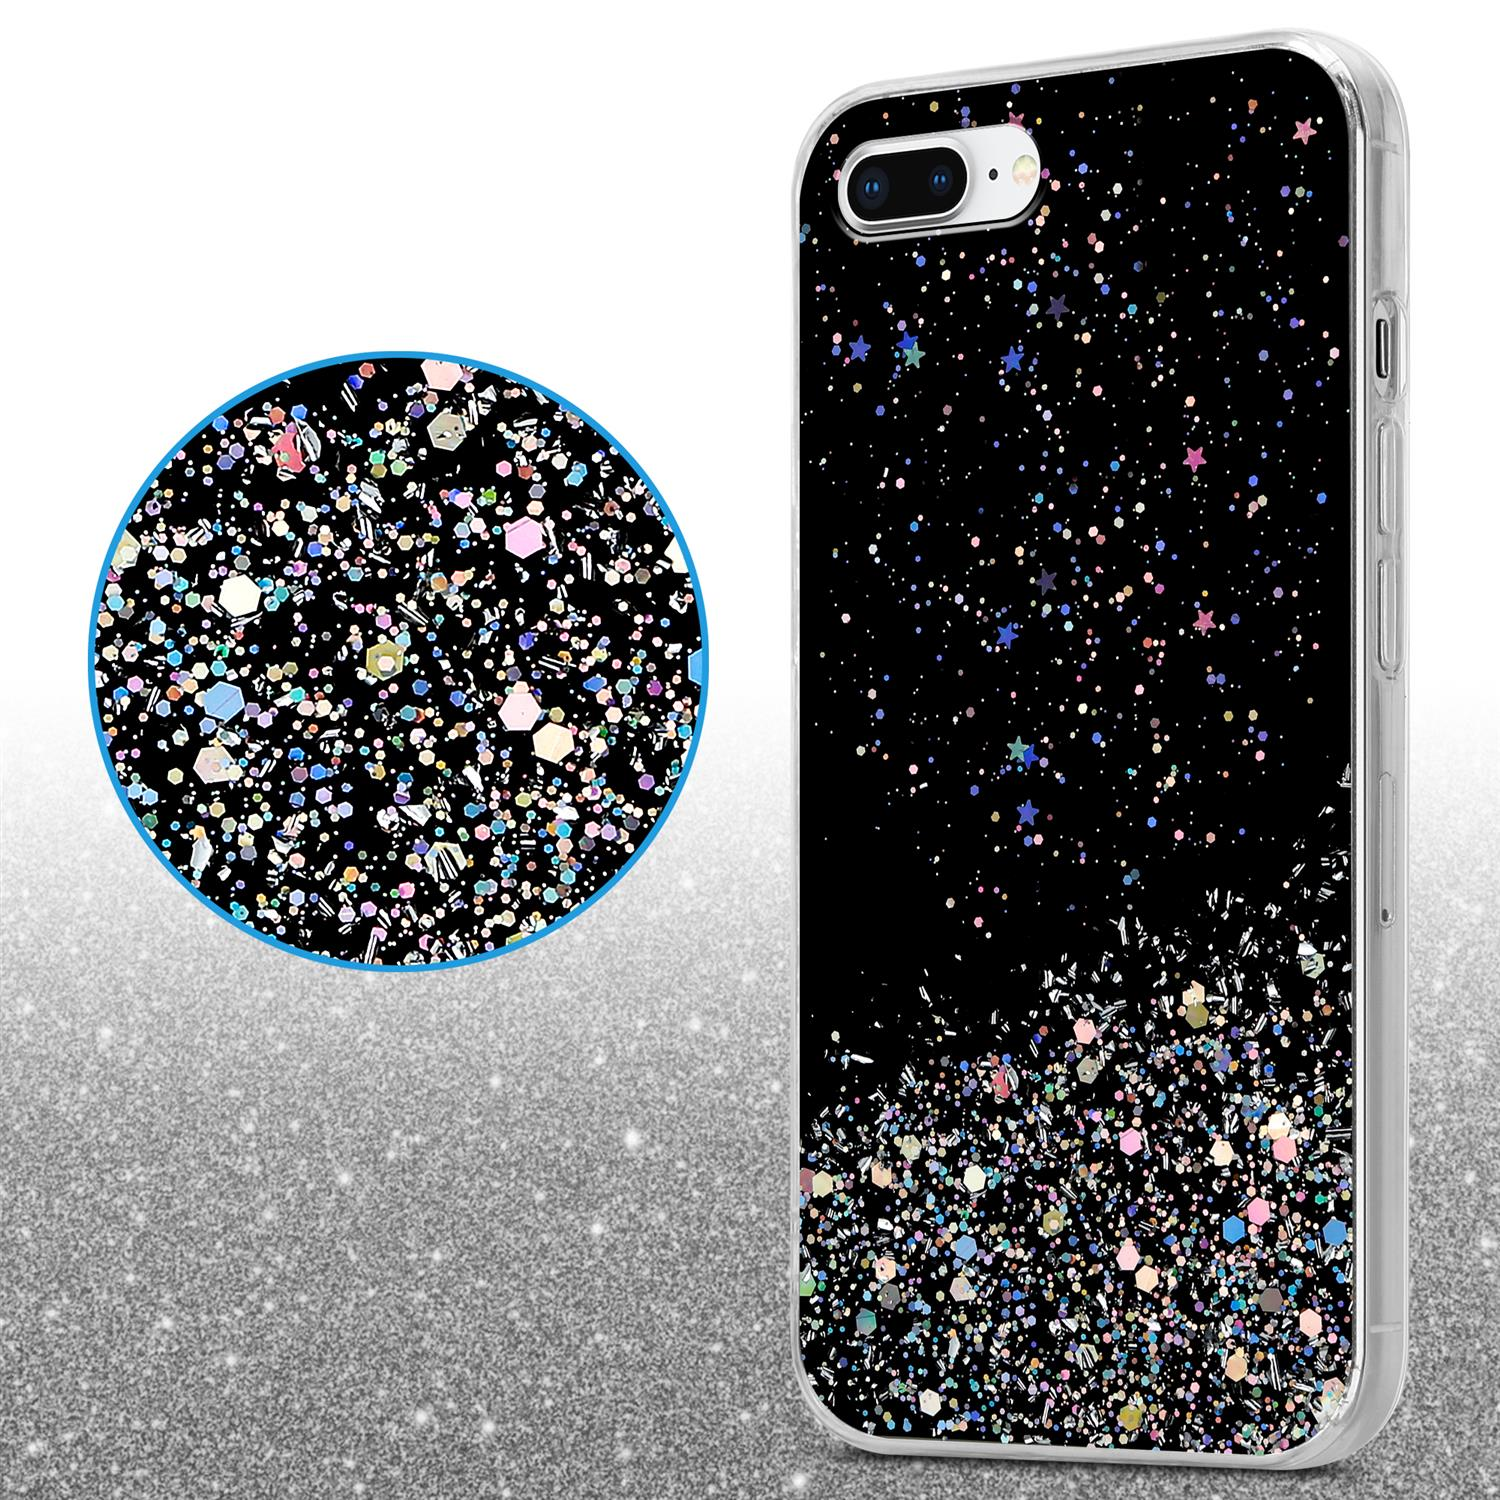 7S mit mit Schutzhülle CADORABO Backcover, 8 Glitter, Glitter / iPhone funkelnden PLUS 7 Apple, Schwarz PLUS, PLUS /